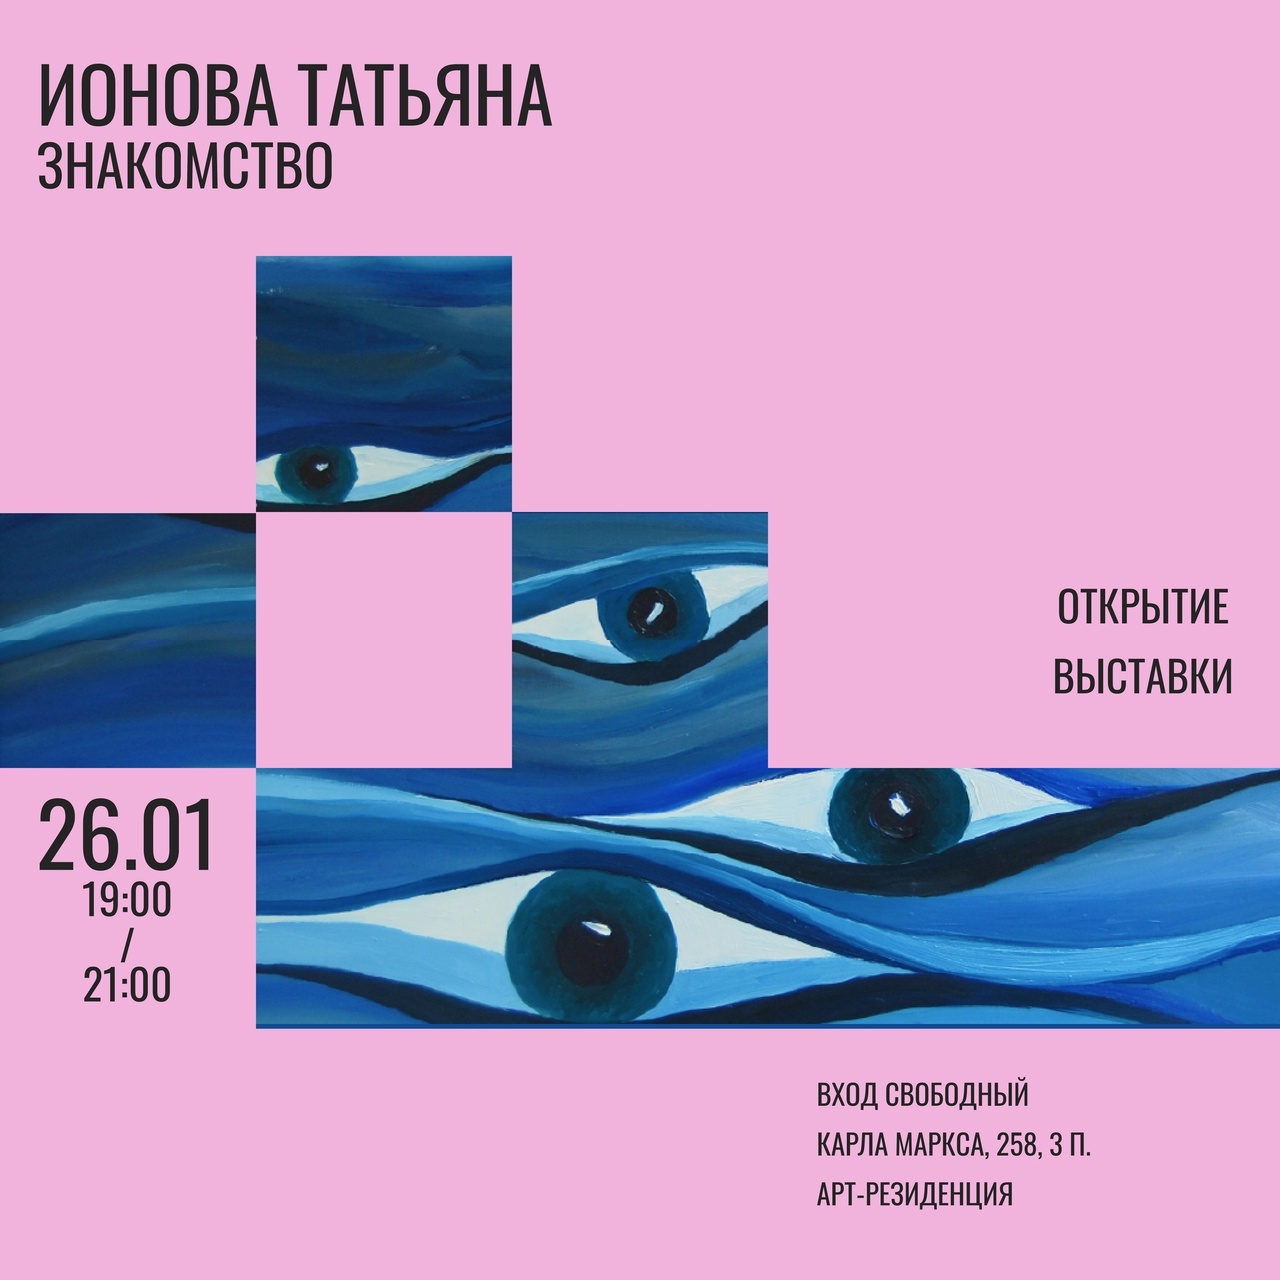 Открытие выставки Татьяны Ионовой